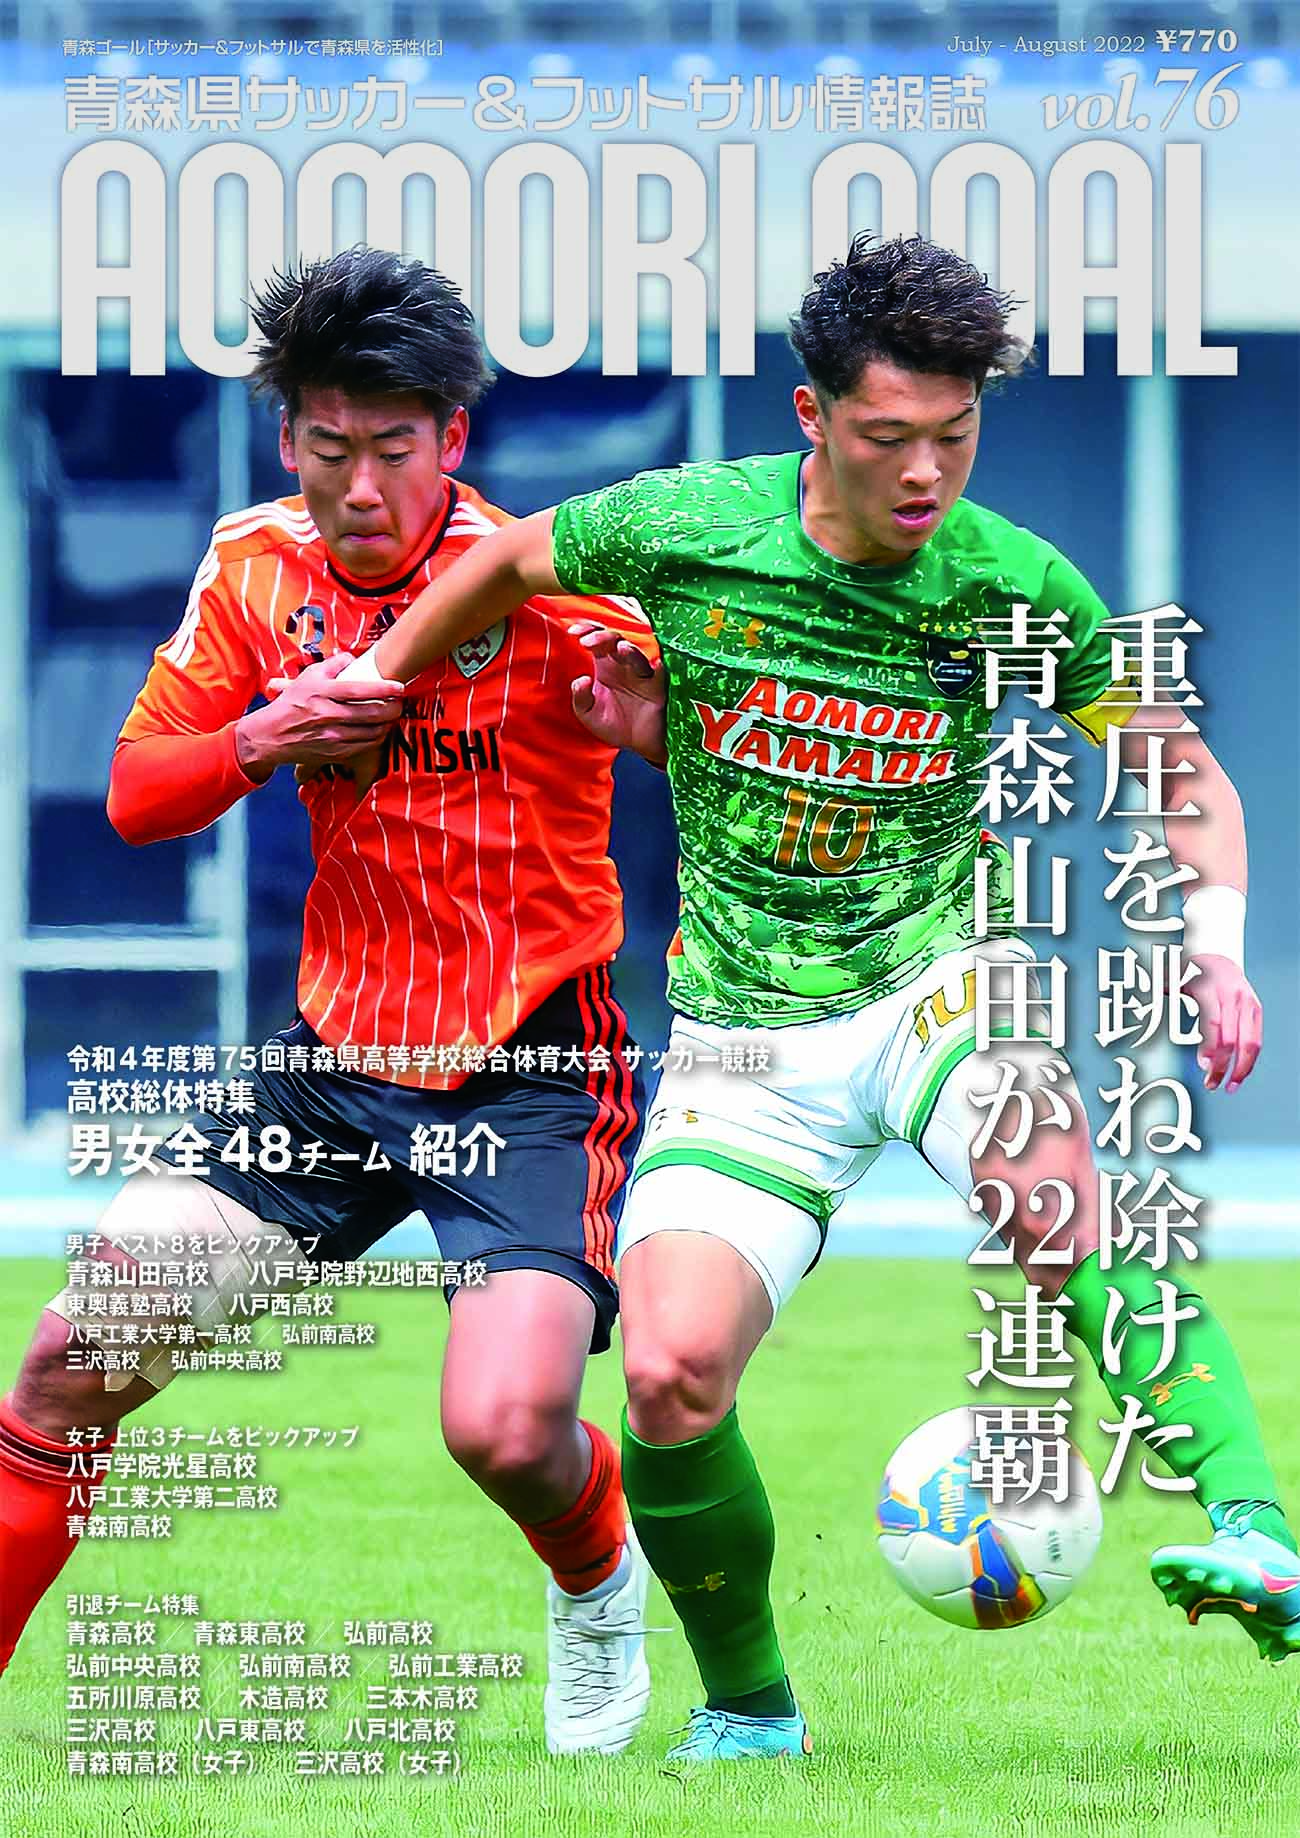 本日 青森ゴール最新号 Aomori Goal Vol 76 が発売 News Topics News Topics 青森ゴール Aomori Goal 青森県サッカー フットサルマガジン